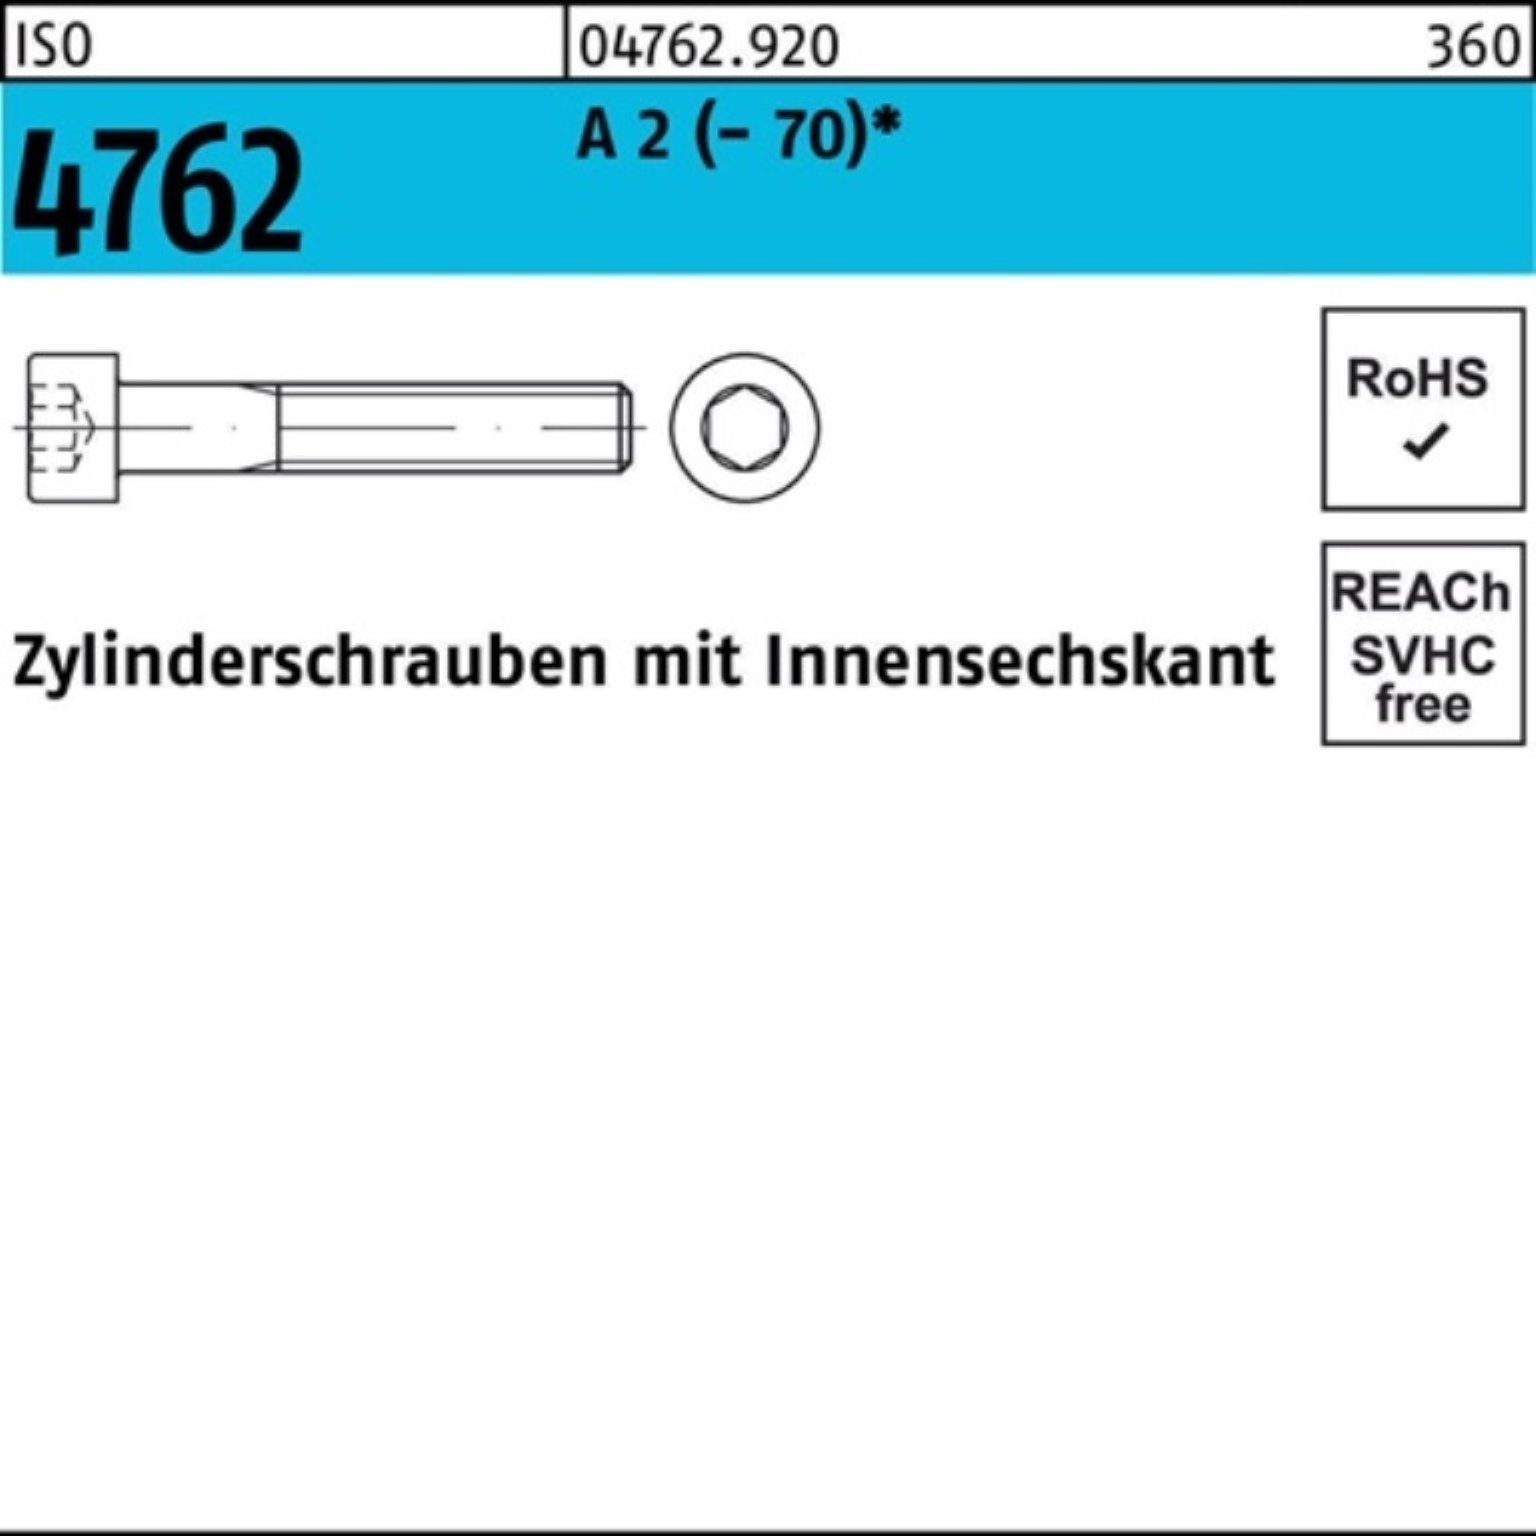 Zylinderschraube 4762 2 (70) 1 A 130 Pack S 100er Zylinderschraube Innen-6kt Reyher ISO M24x